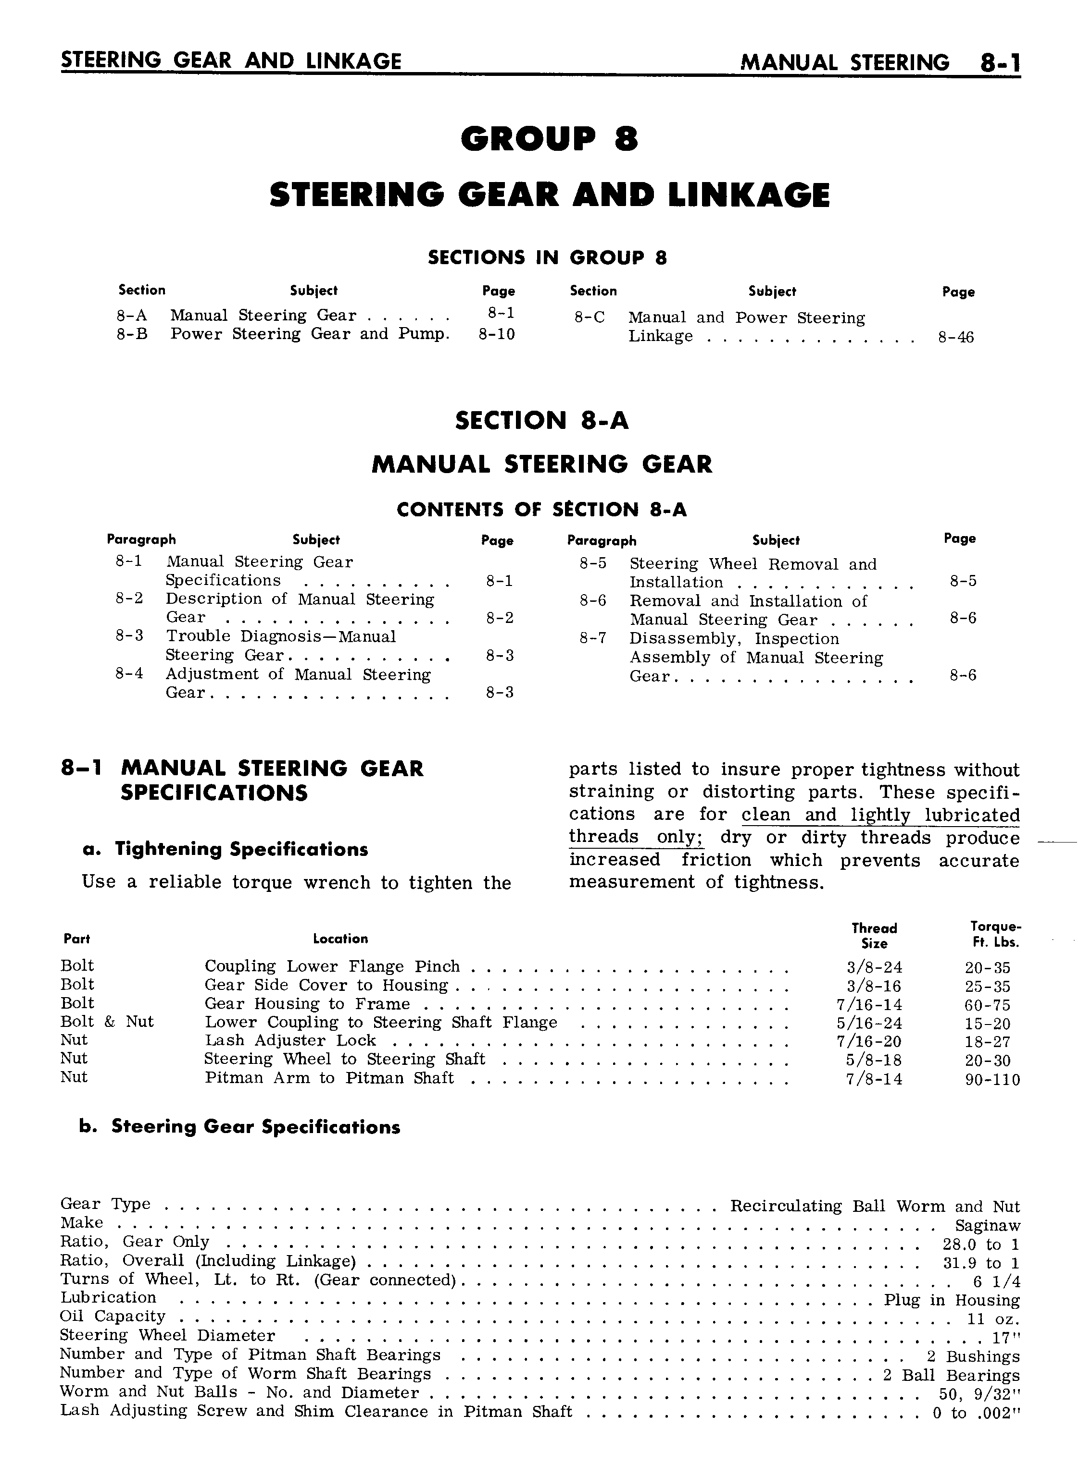 n_08 1961 Buick Shop Manual - Steering-001-001.jpg